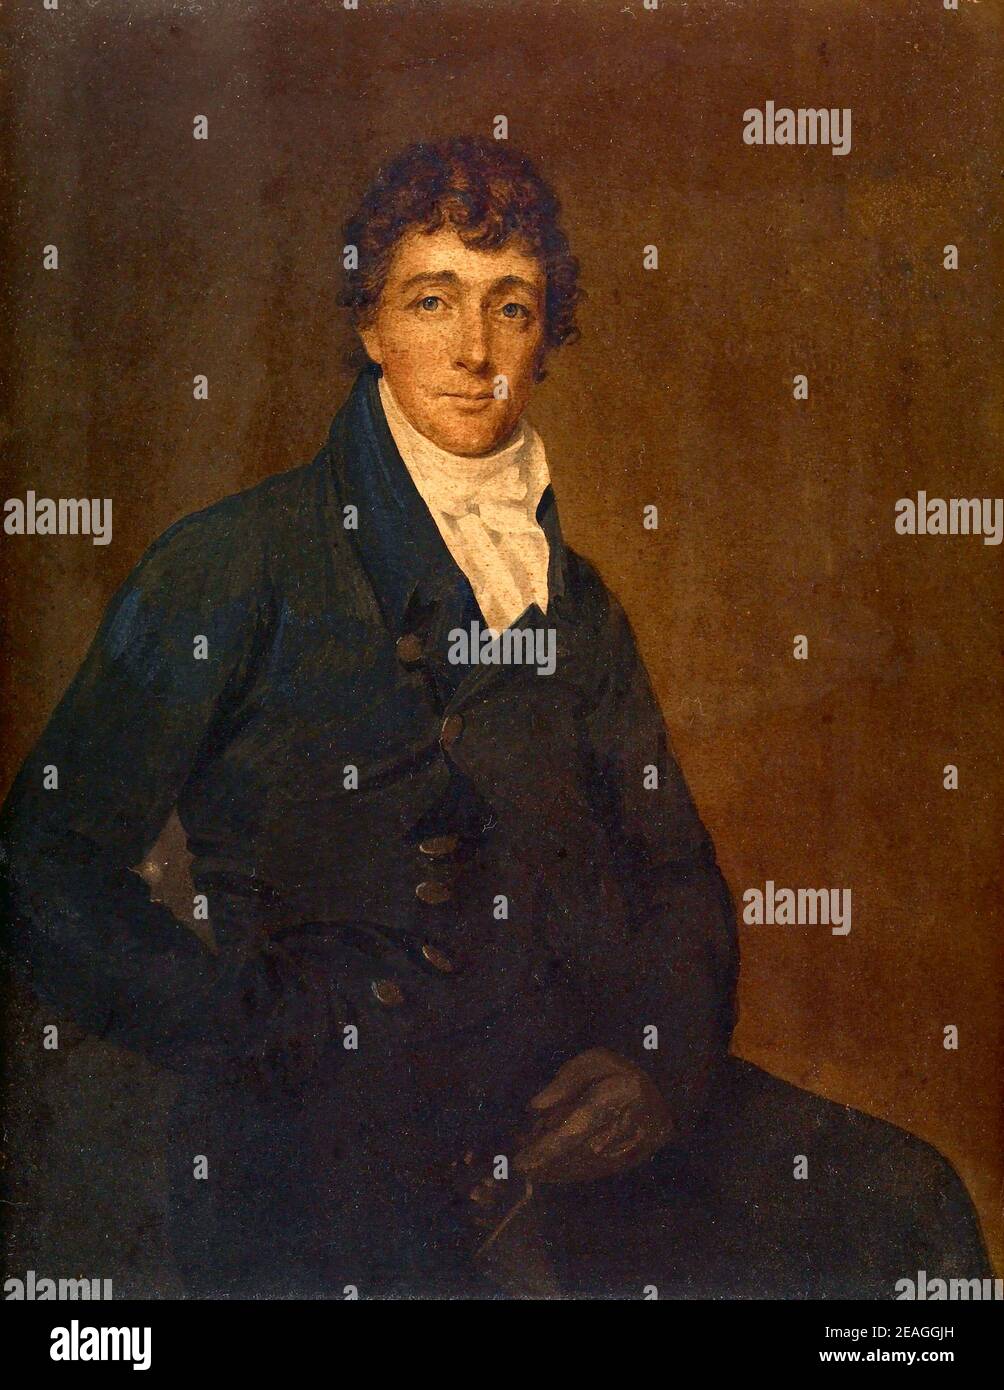 Francis Scott Key (1779 – 1843) American meglio conosciuto per aver scritto il testo dell'inno nazionale americano "The Star-Spangled Banner". Foto Stock